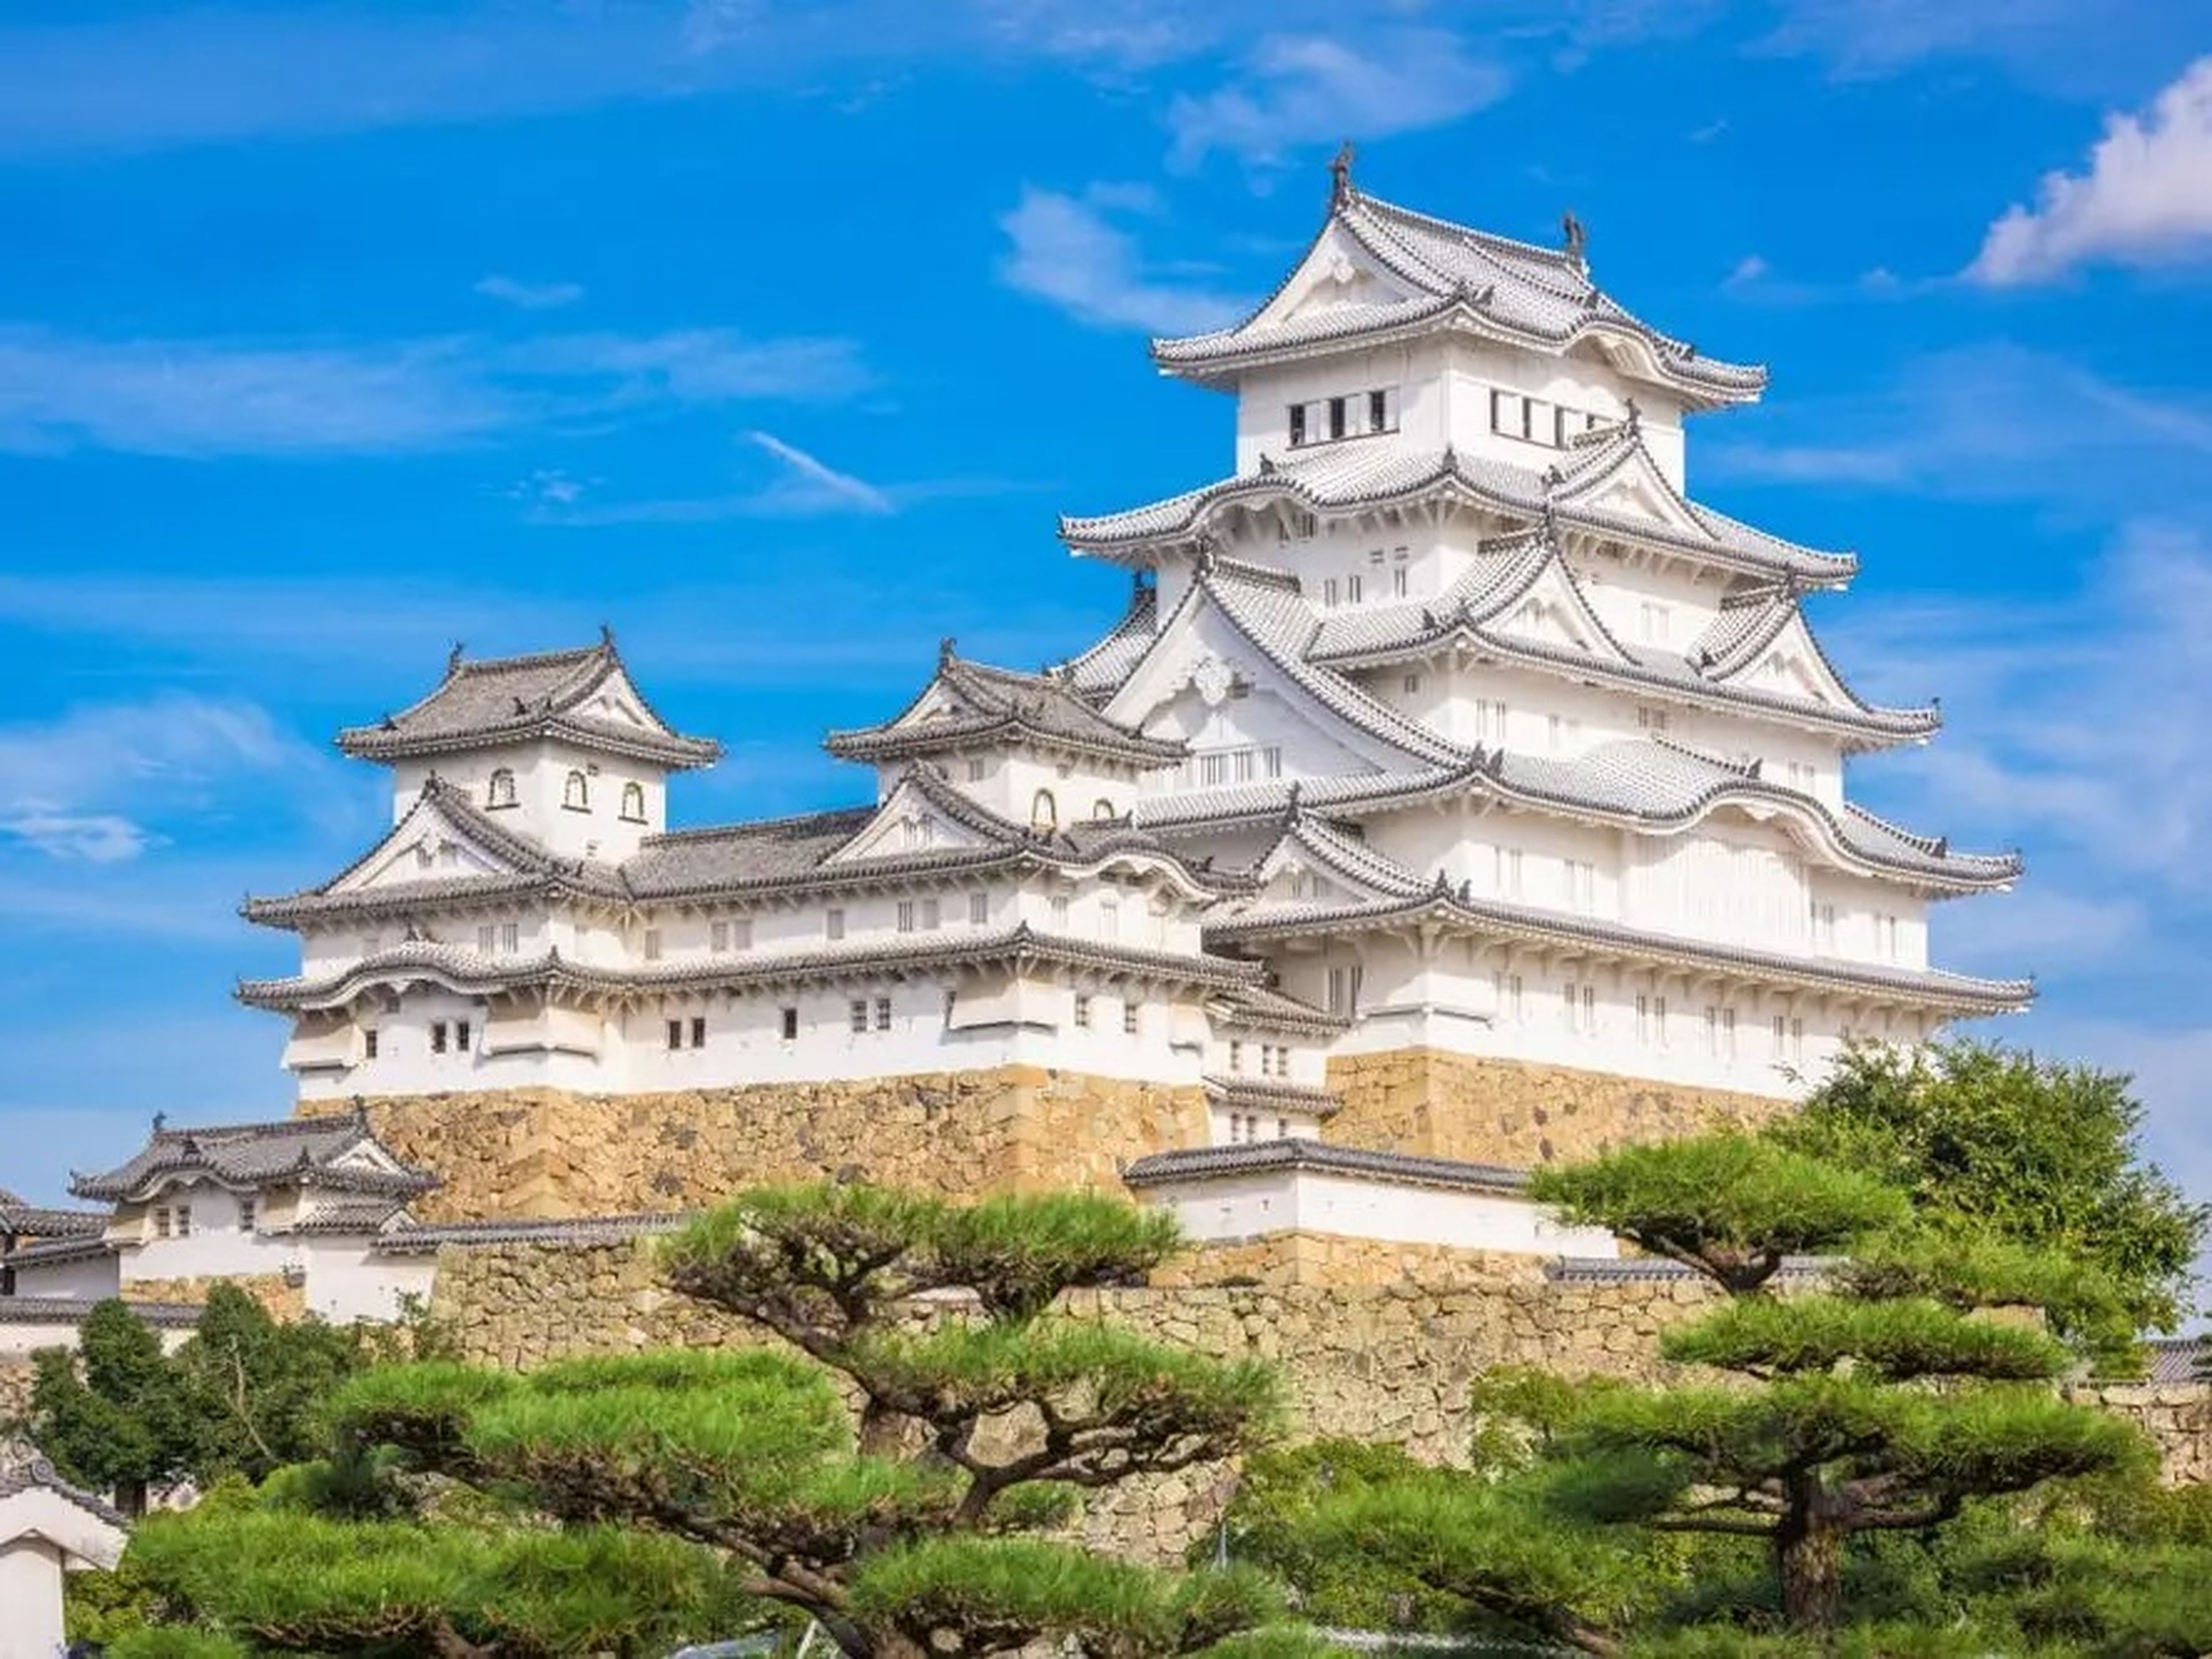 El Castillo de Himeji.